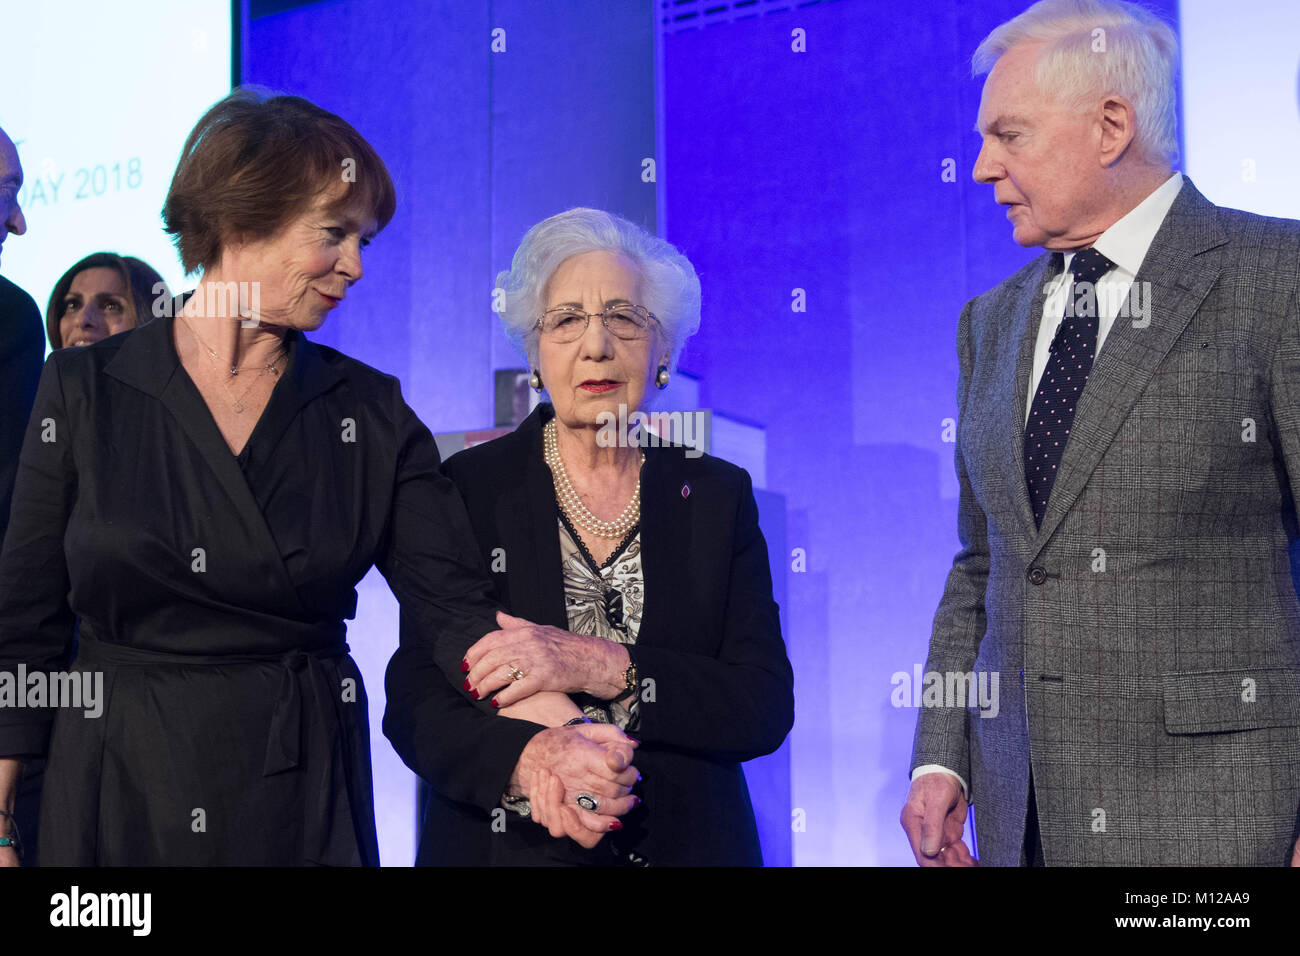 Celia Imrie (à gauche) et Derek Jacobi (droite) Inscrivez-vous survivant de l'Holocauste Helen Aronson (centre) avant un événement commémoratif au QEII Conference Centre de Londres, pour marquer le Jour commémoratif de l'Holocauste. Banque D'Images